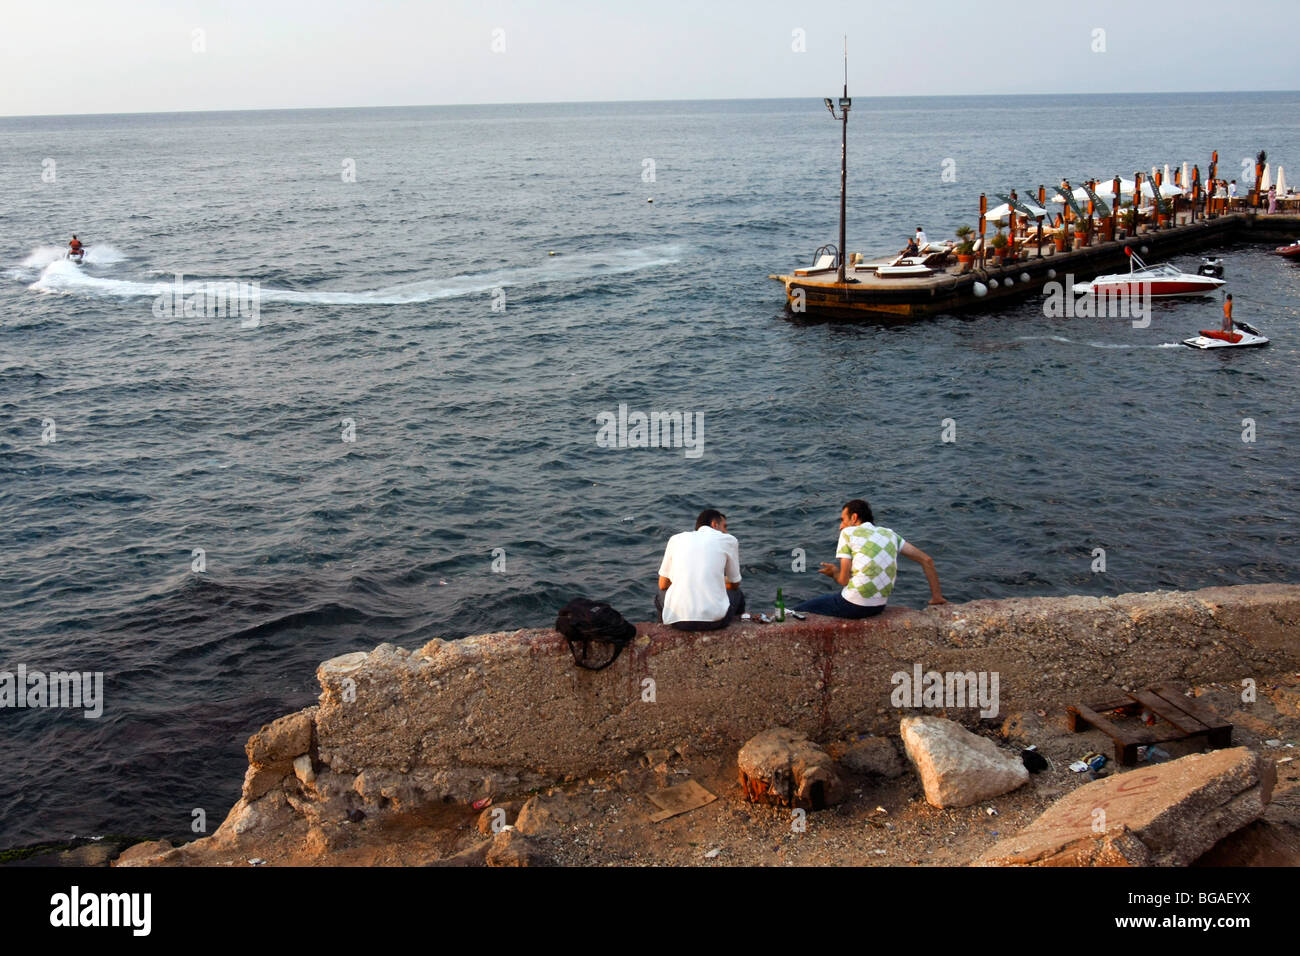 Two men sit along the sea shore near the Cornich sea side promenade in Beirut in Lebanon. Stock Photo